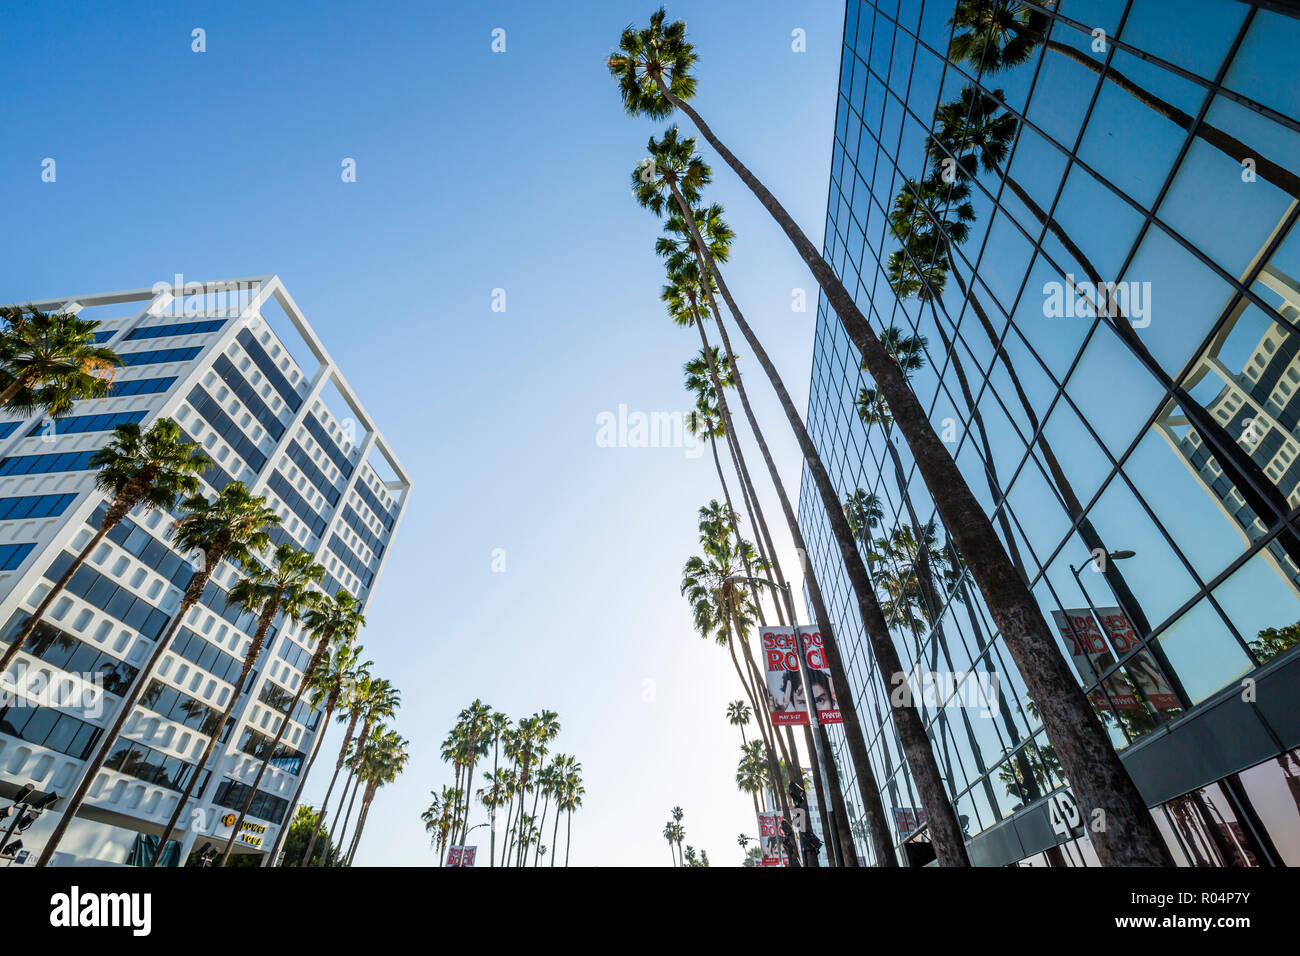 Blick auf Palmen und zeitgenössische Architektur auf dem Hollywood Boulevard, Los Angeles, Kalifornien, Vereinigte Staaten von Amerika, Nordamerika Stockfoto